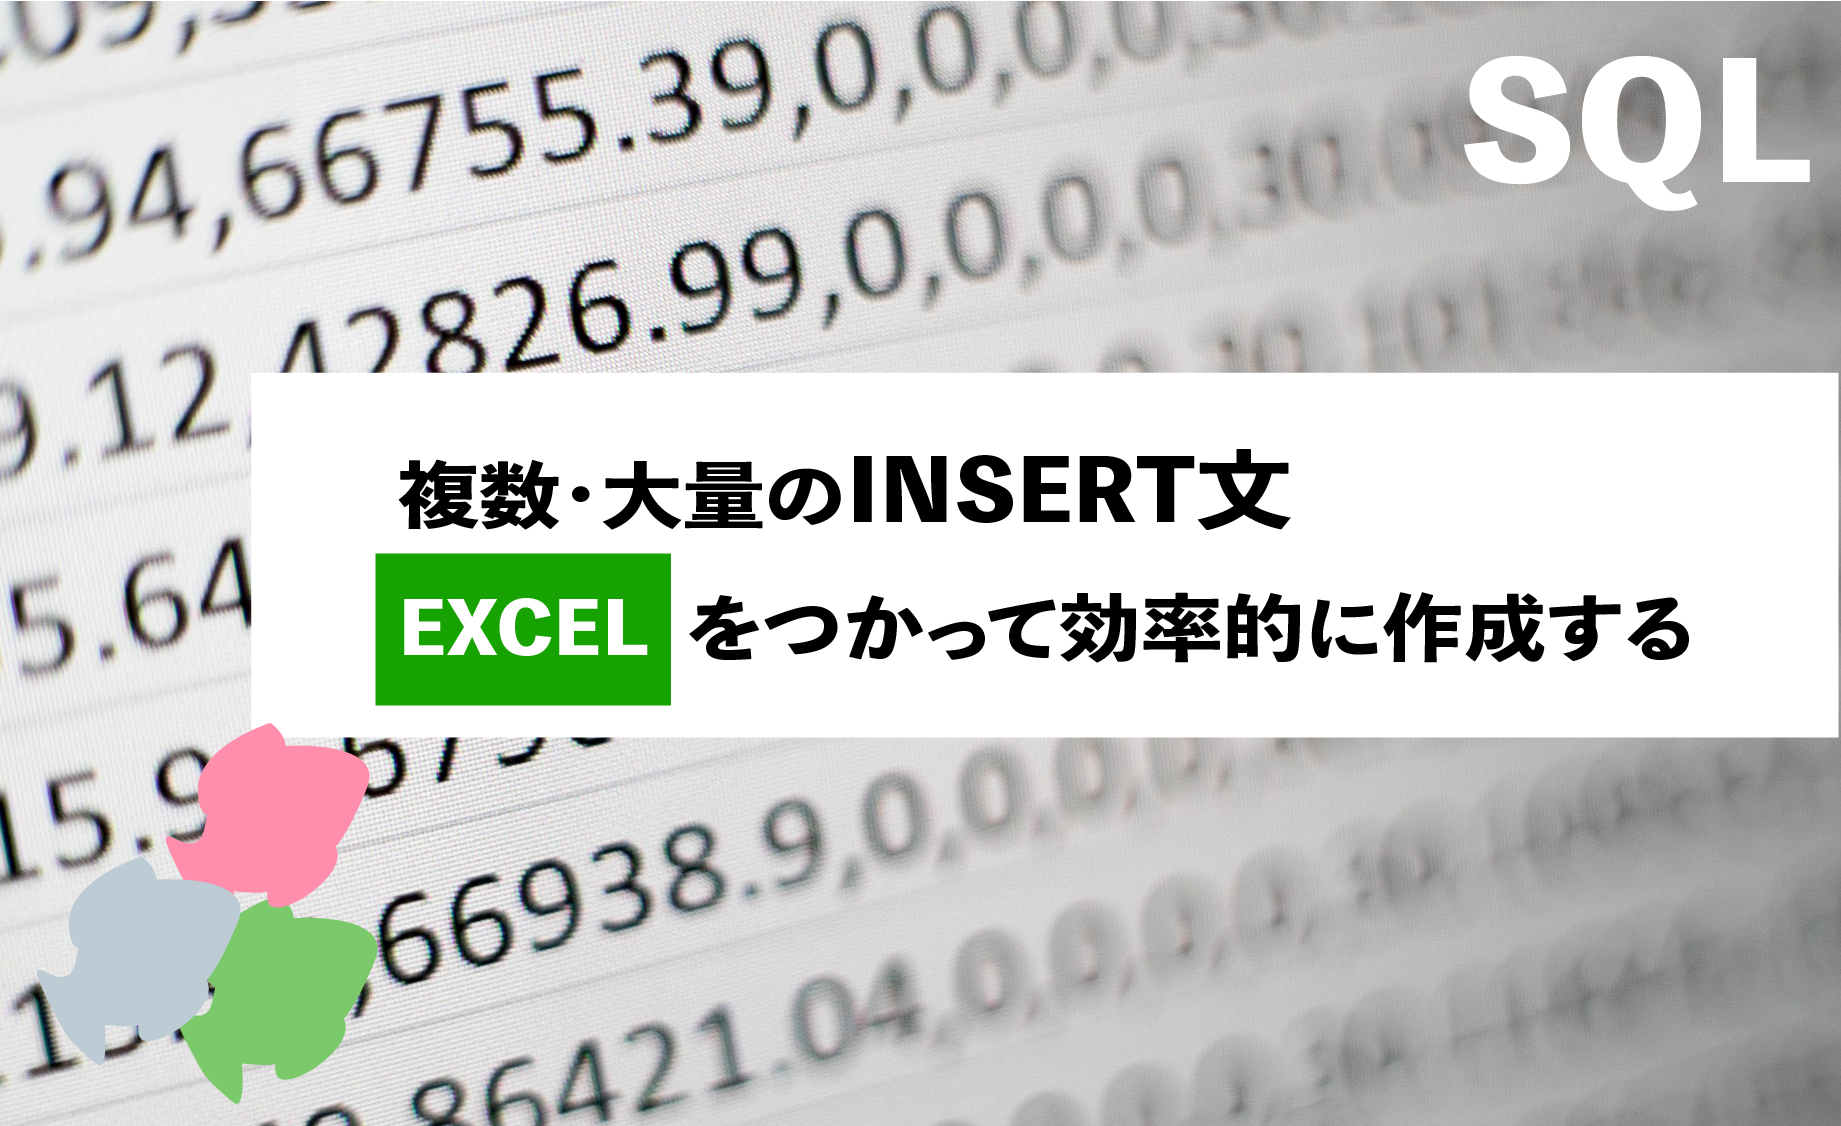 SQL INSERT文をEXCELを使って大量作成